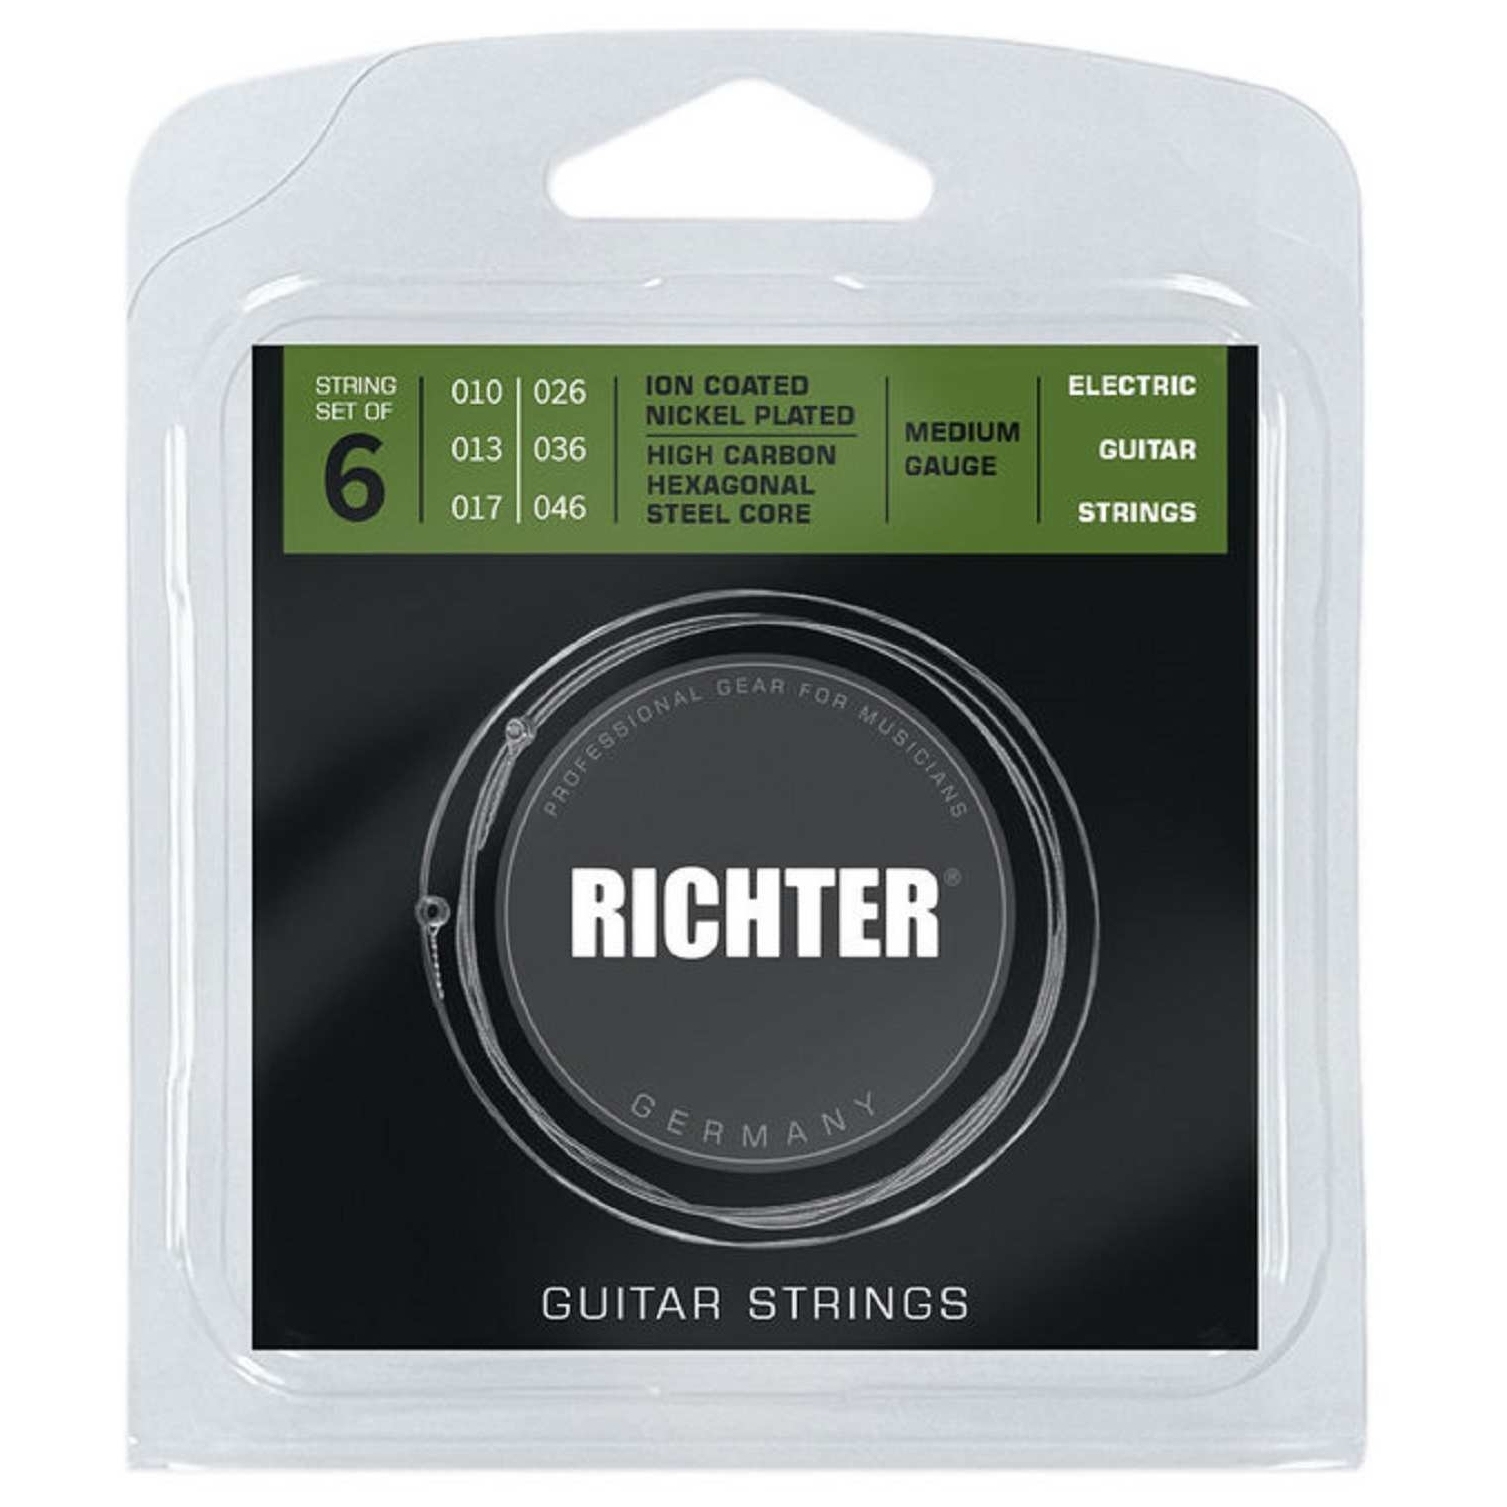 Richter Ion Coated Nickel Wound Medium Gauge | 010-046